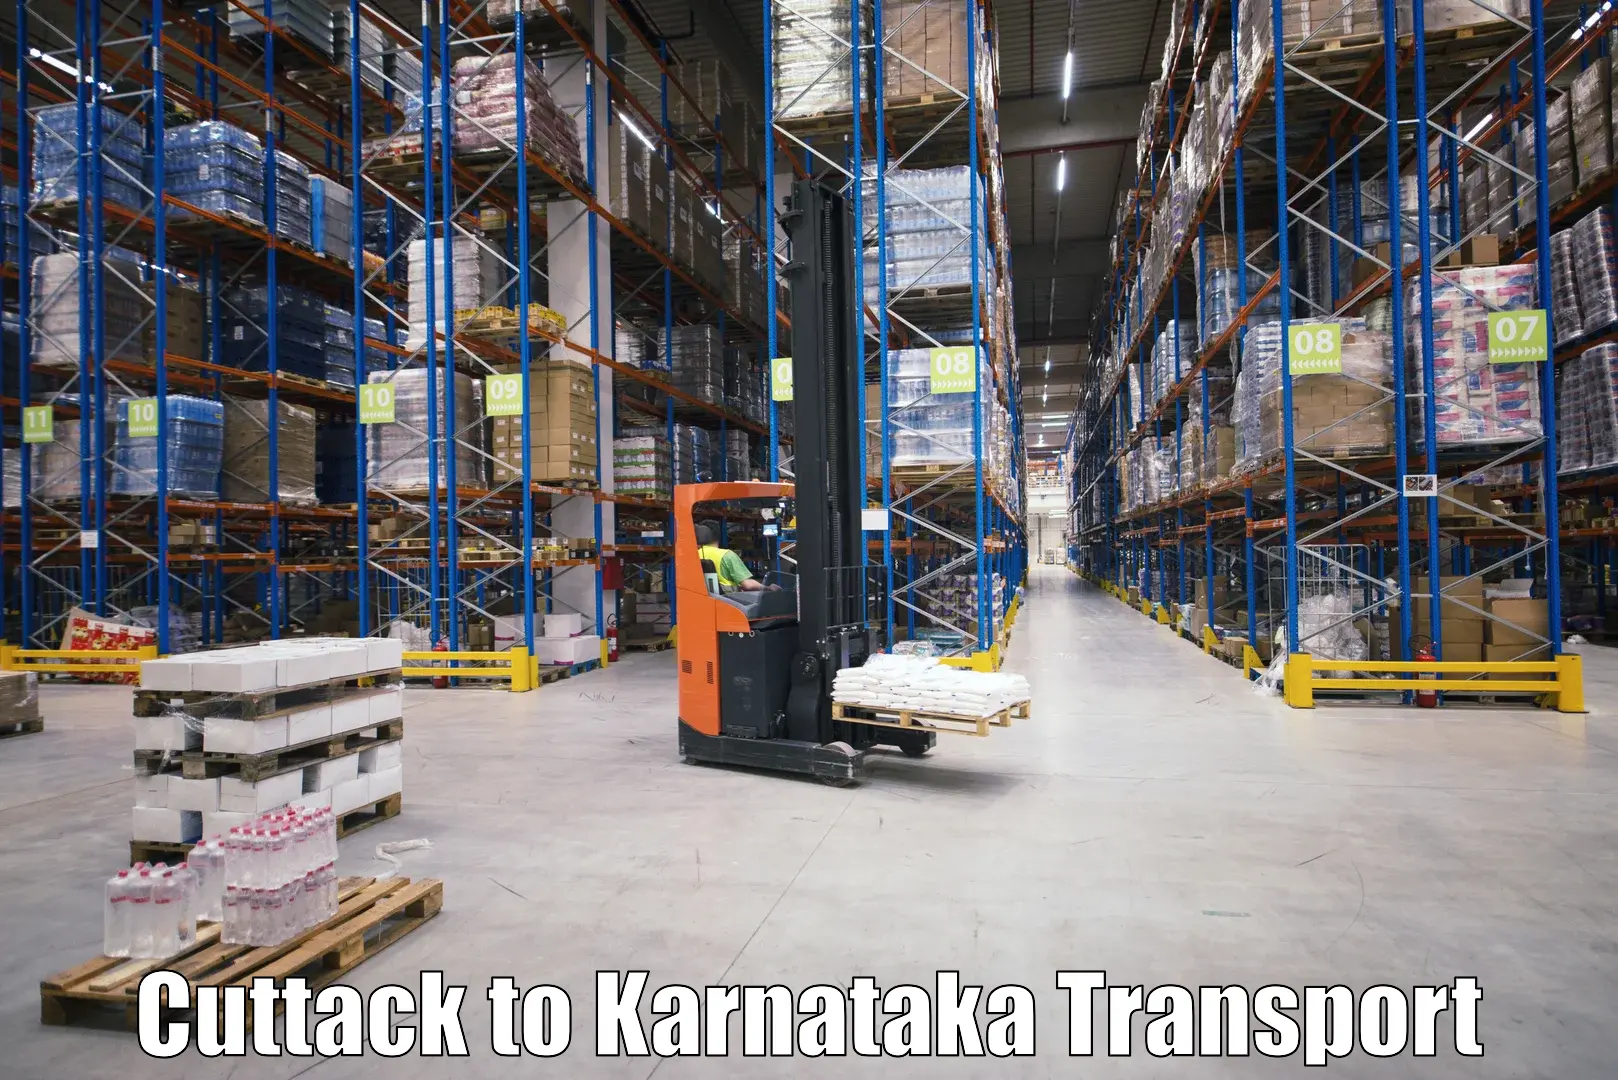 Part load transport service in India Cuttack to Kotturu